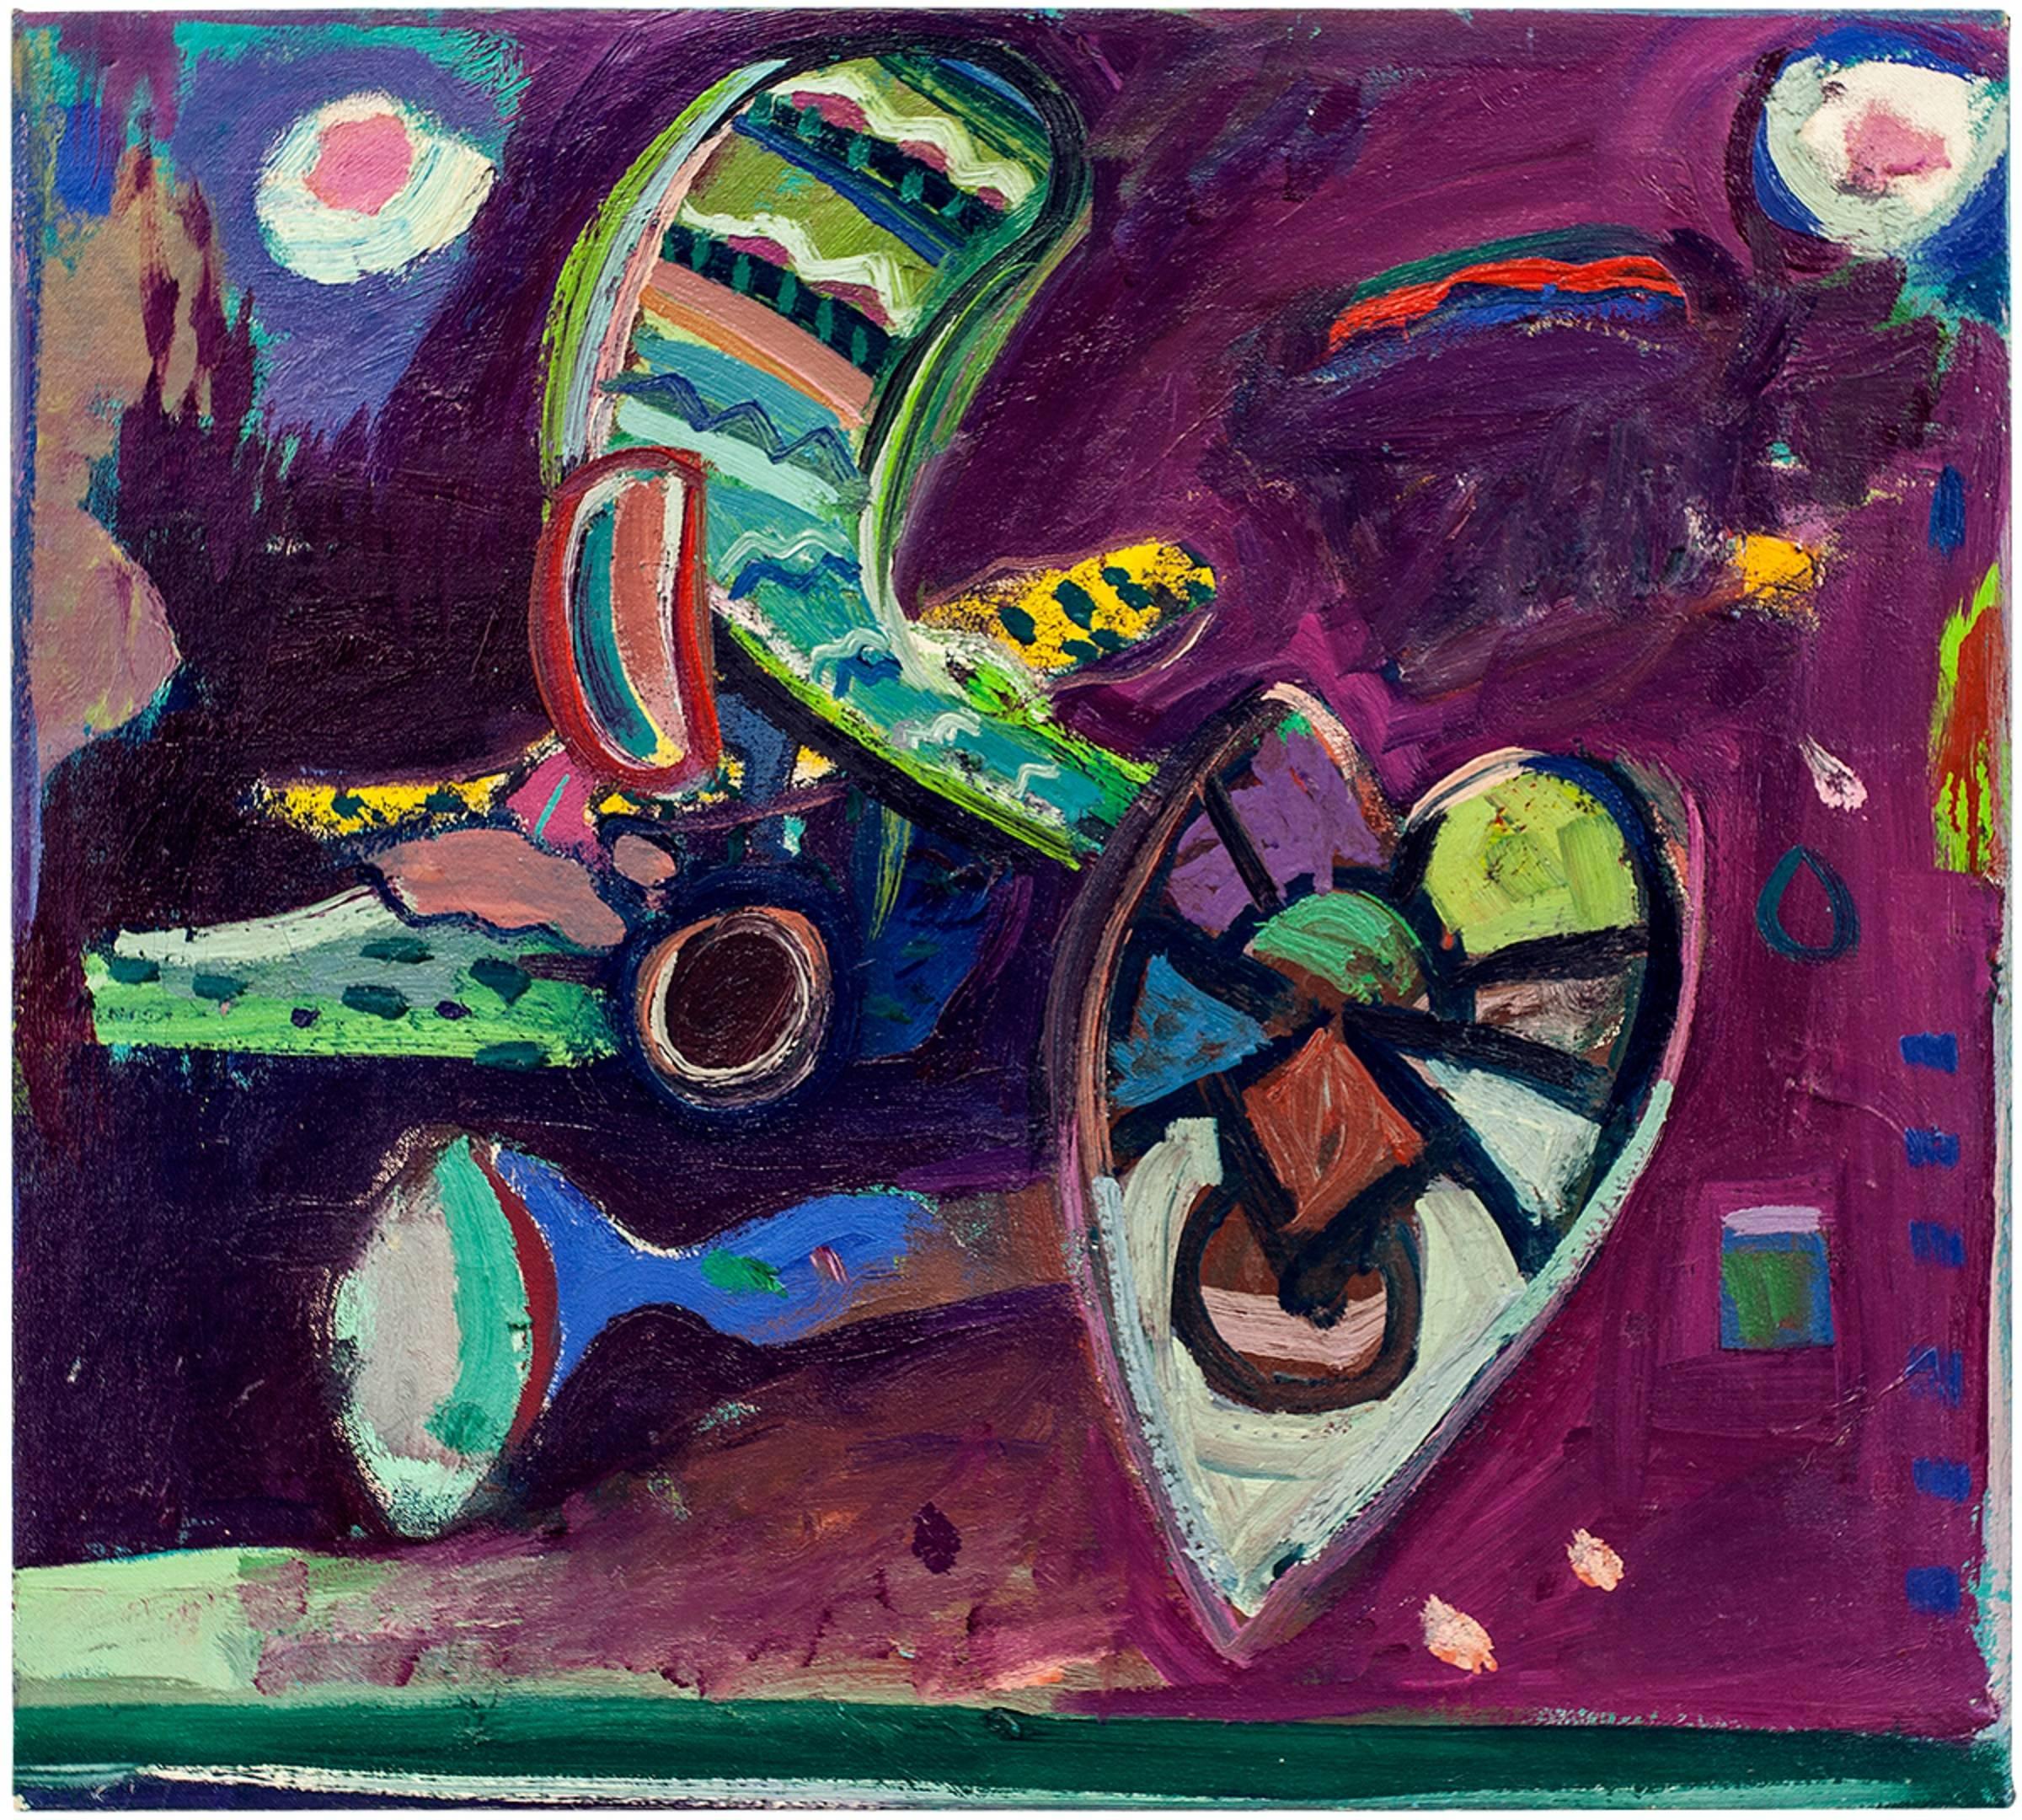 Jay Milder (geb. 1934) ist ein amerikanischer Künstler und ein figurativer expressionistischer Maler der zweiten Generation der New York School. Alttestamentarische Themen wie die Jakobsleiter und die Arche Noah sowie der jüdische mystische Glaube